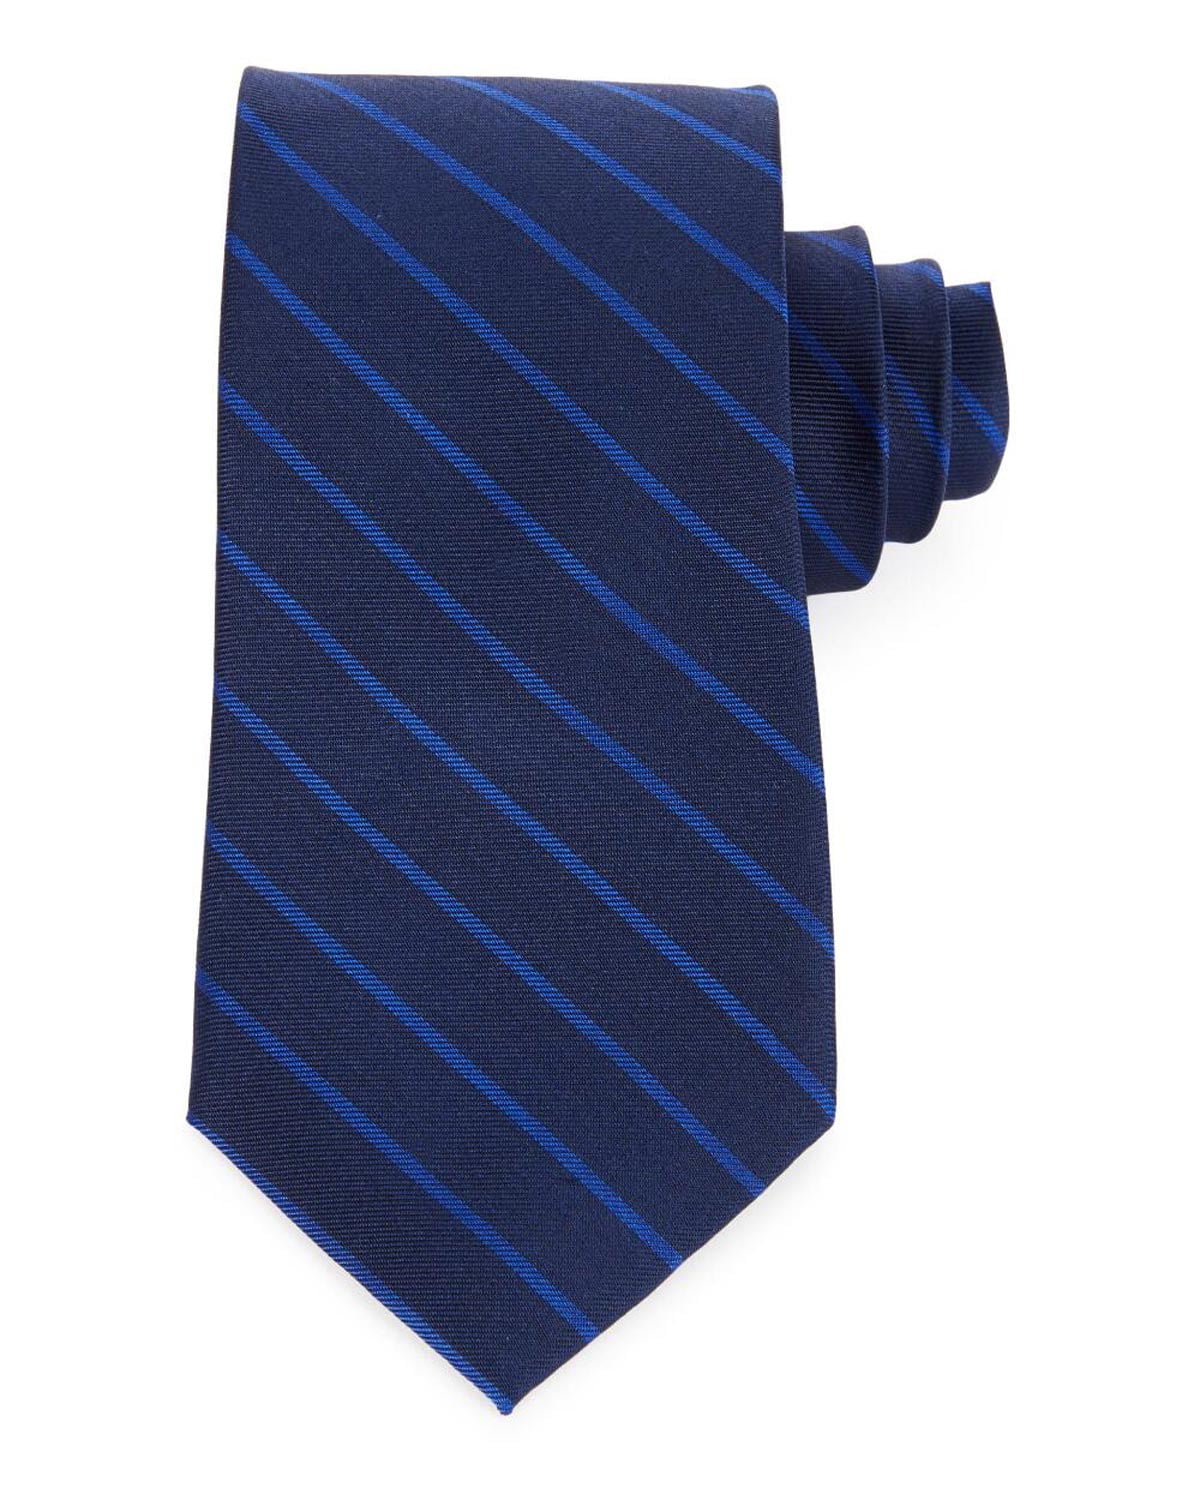 Tommy Hilfiger Mens Silk Tie Blue Striped Necktie